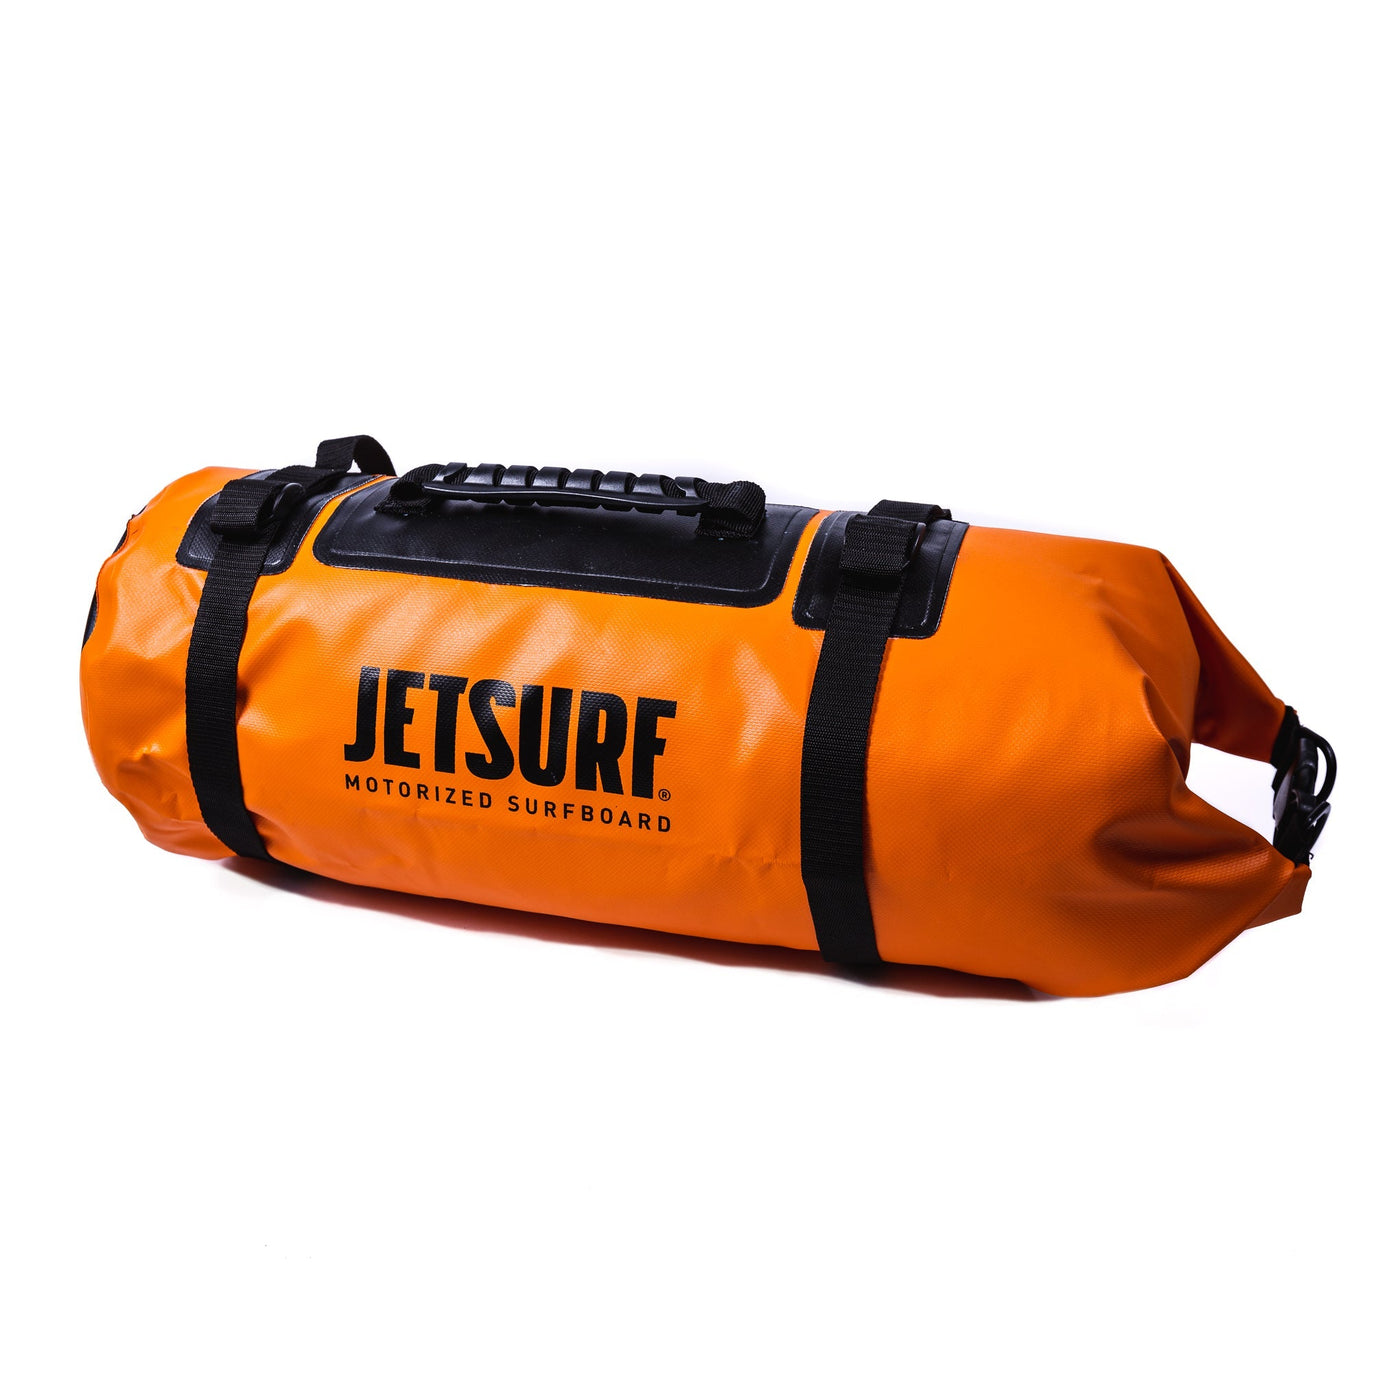 Torba DUFLE dedykowana do desek surfingowych Jetsurf Adventure DFI oraz Adventure DFI Plus wyposażonych w platformę montażową. pomarańczowa